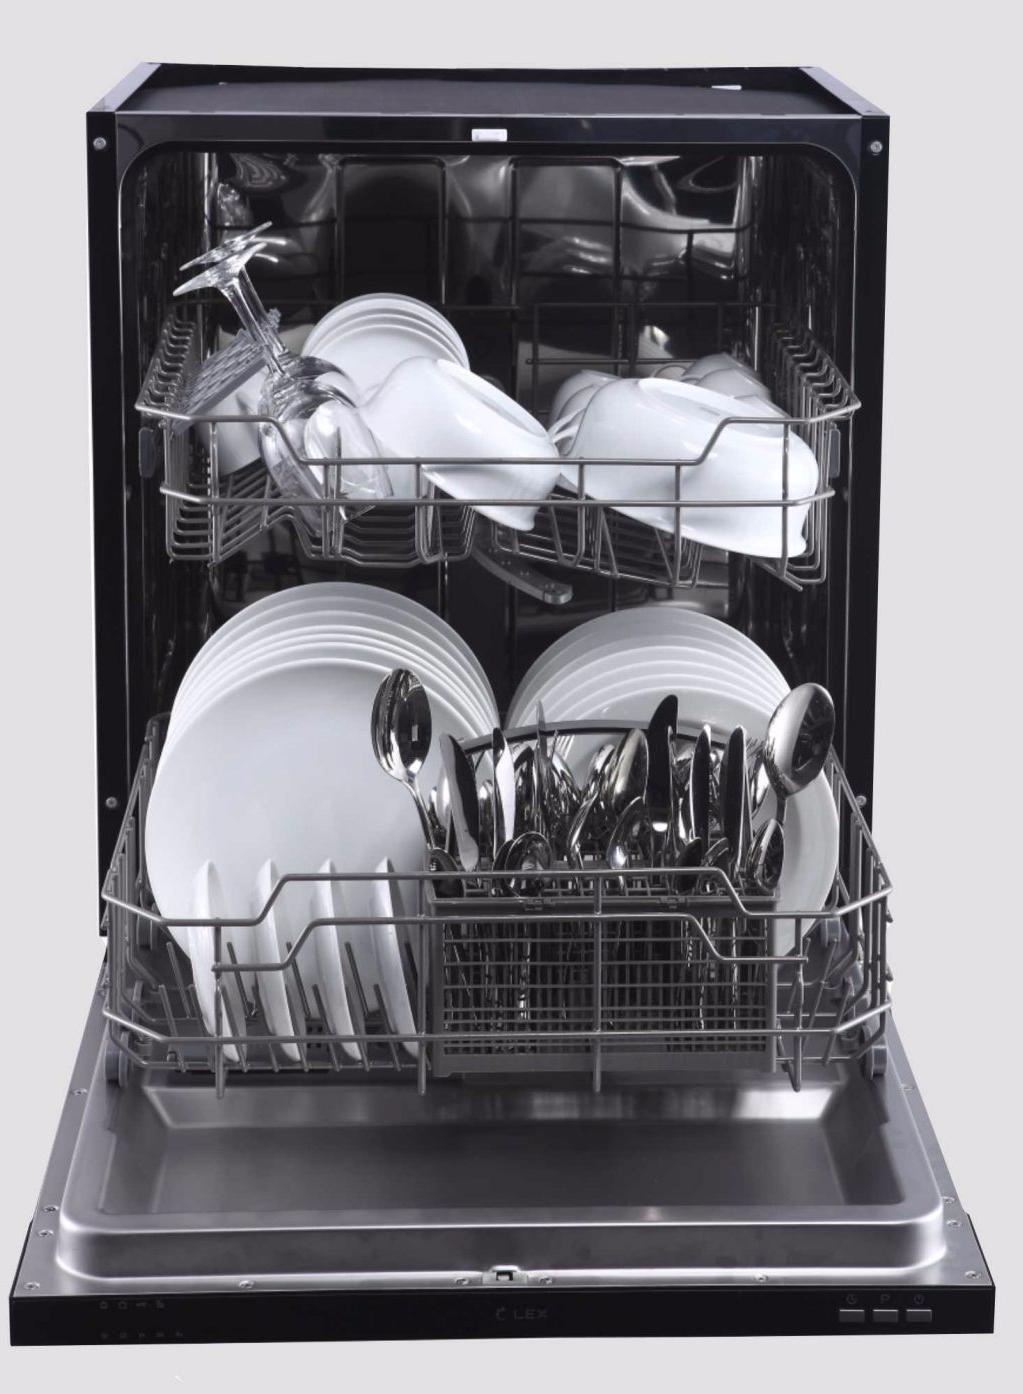 Посудомоечная машина 60 см купить в спб. Lex PM 6042 B. Посудомоечная машина Lex pm6042 схема. Посудомоечная машина полноразмерная Lex PM 6042 B. Посудомоечная машина Lex 60 см.